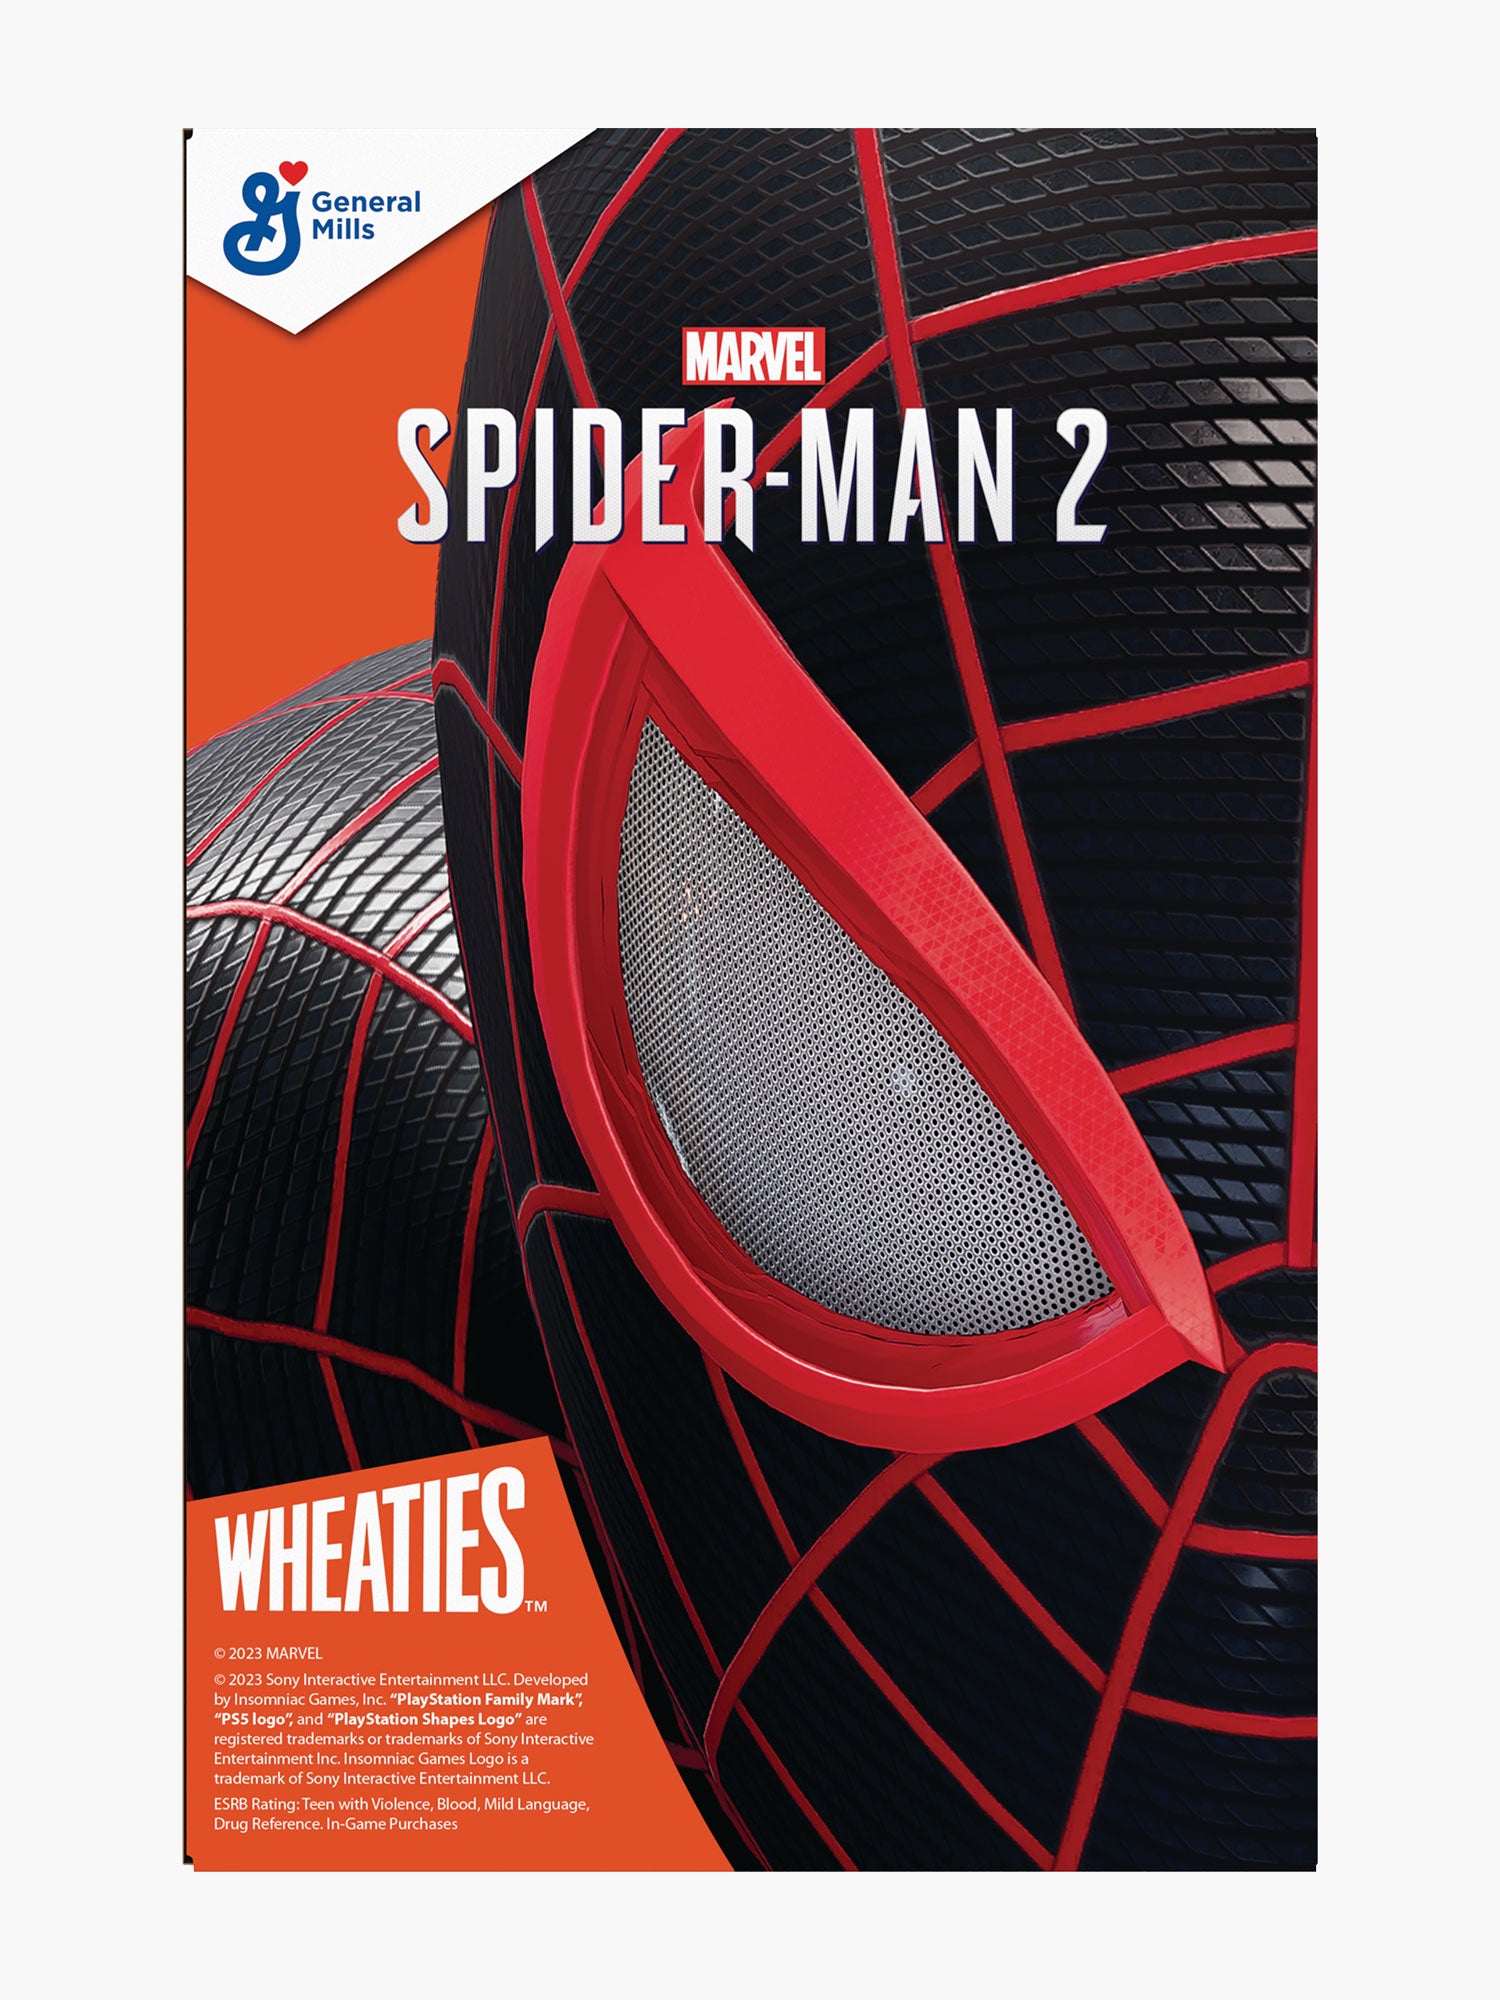 Marvel's Spider Man  Spiderman, Marvel spiderman, Spider man playstation